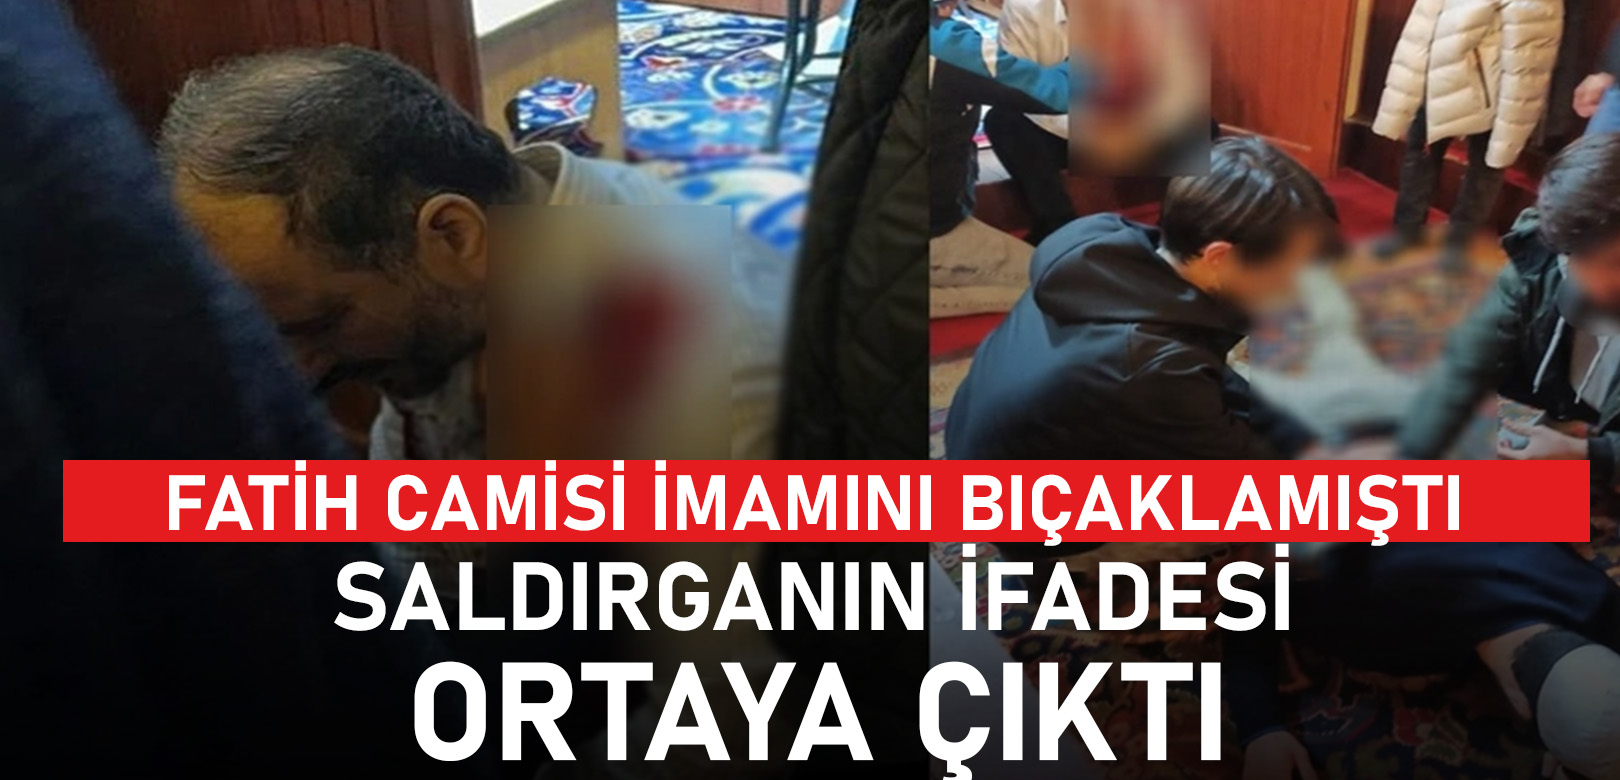 Fatih Camii saldırganının ifadesi ortaya çıktı: Anlık bir refleksti